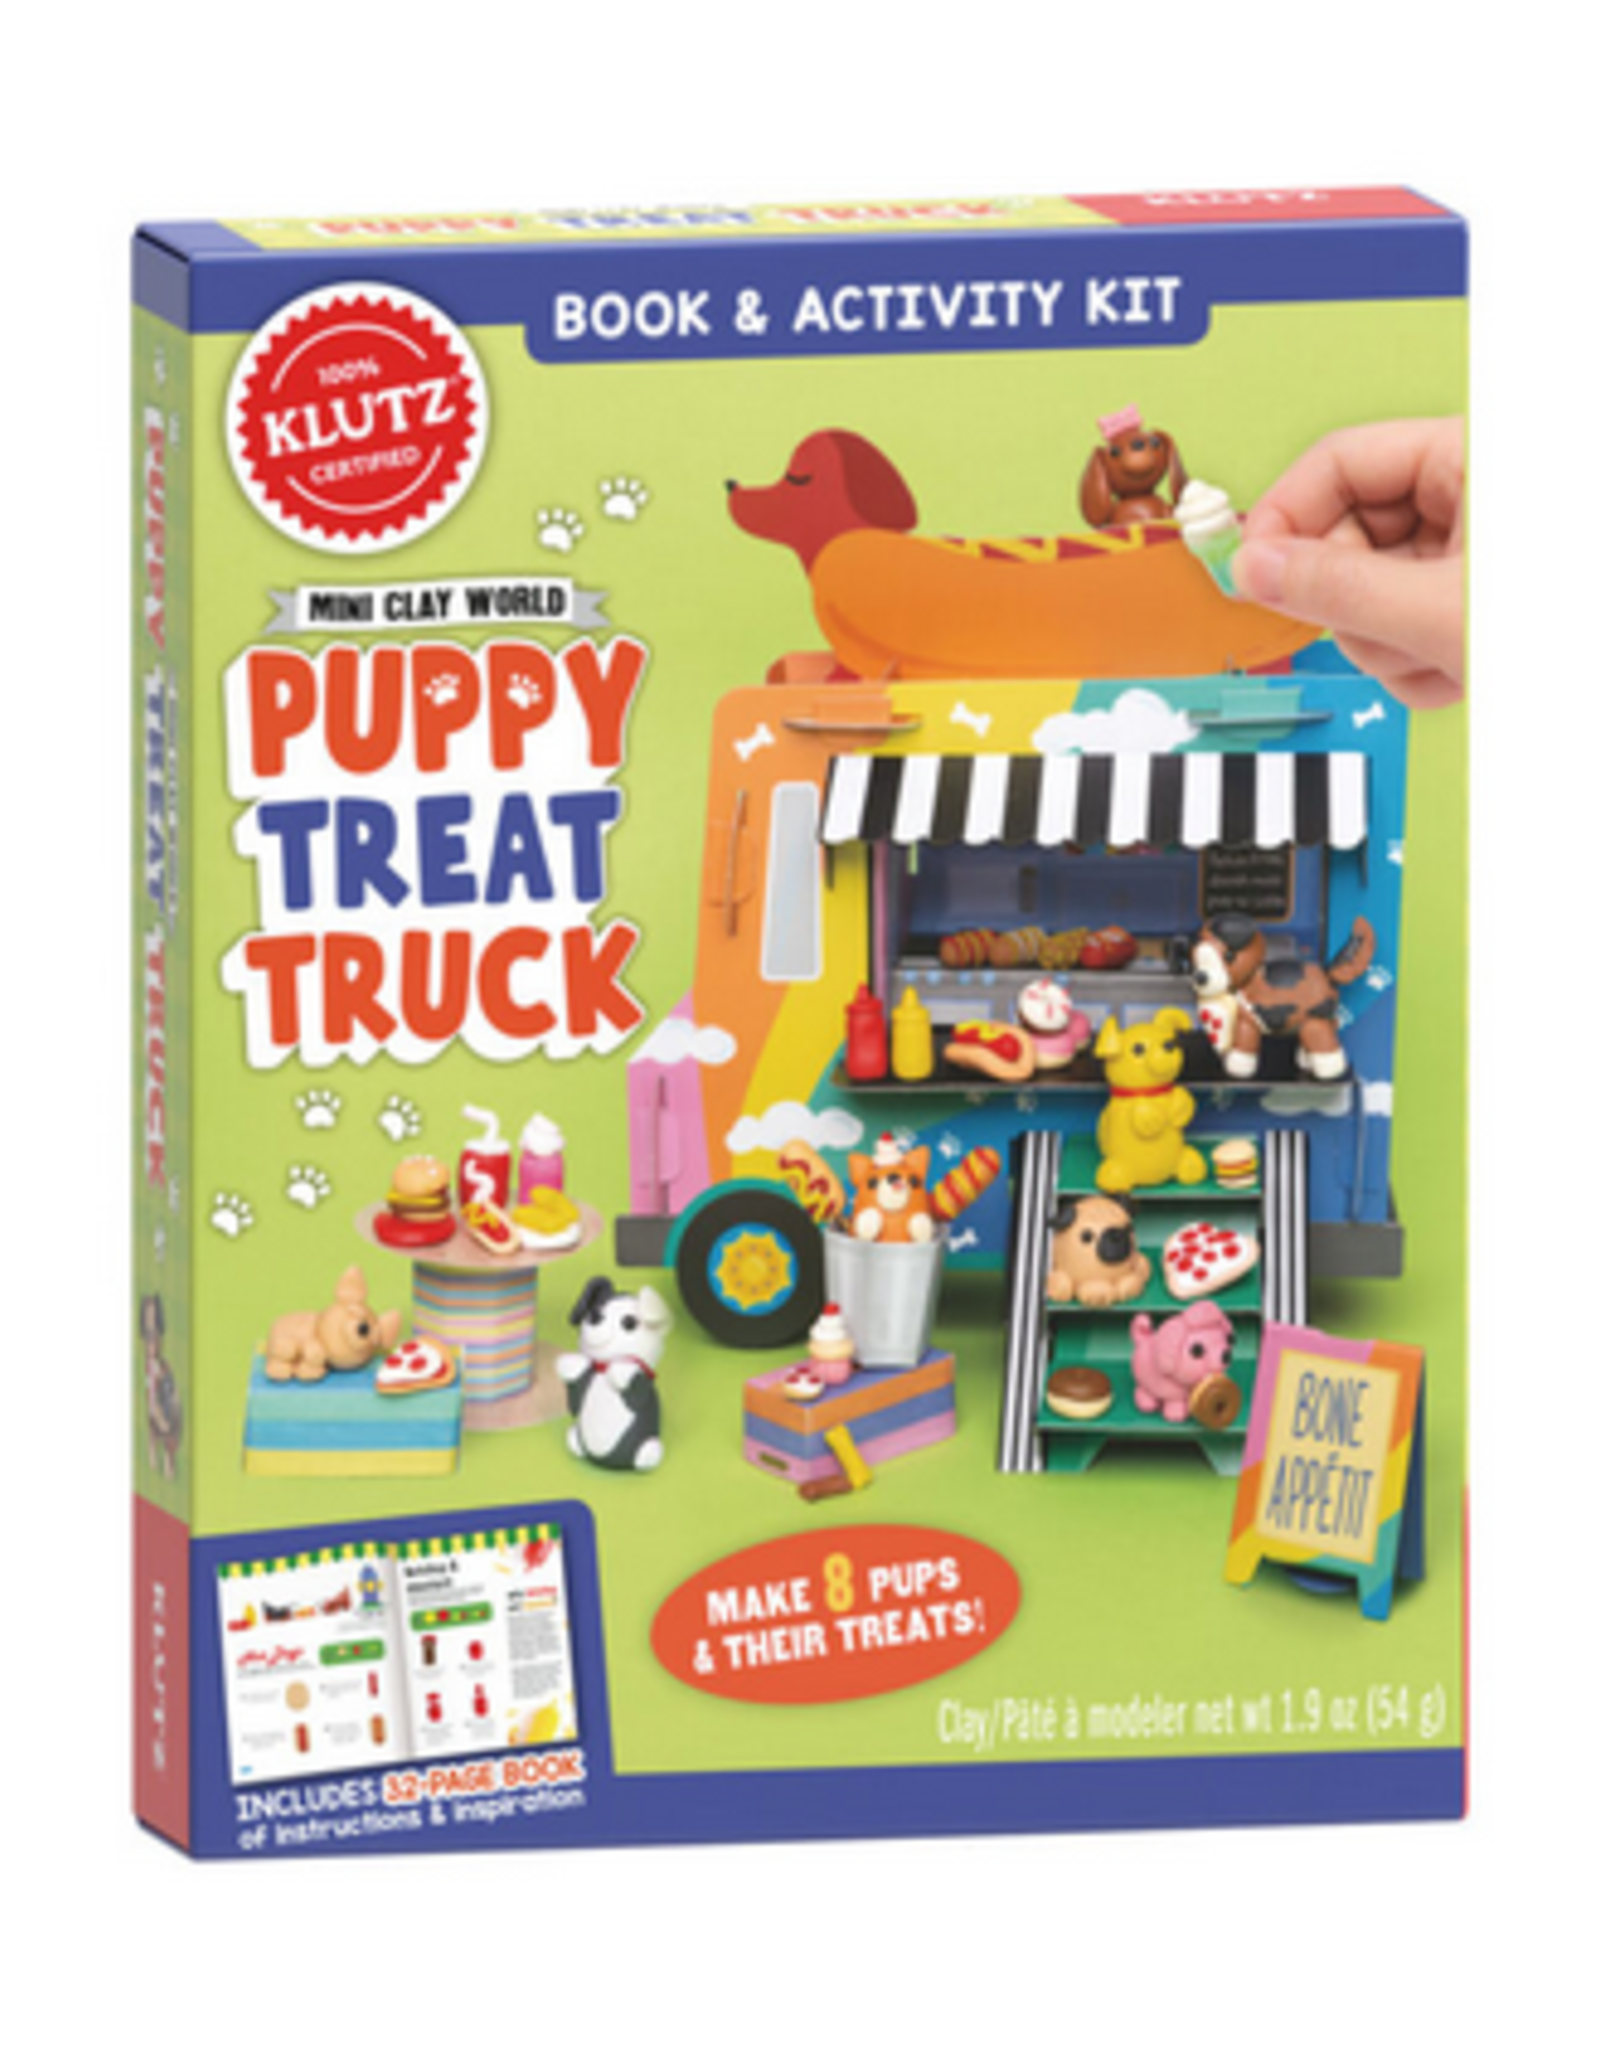 Mini Clay World Puppy Treat Truck - Tildie's Toy Box